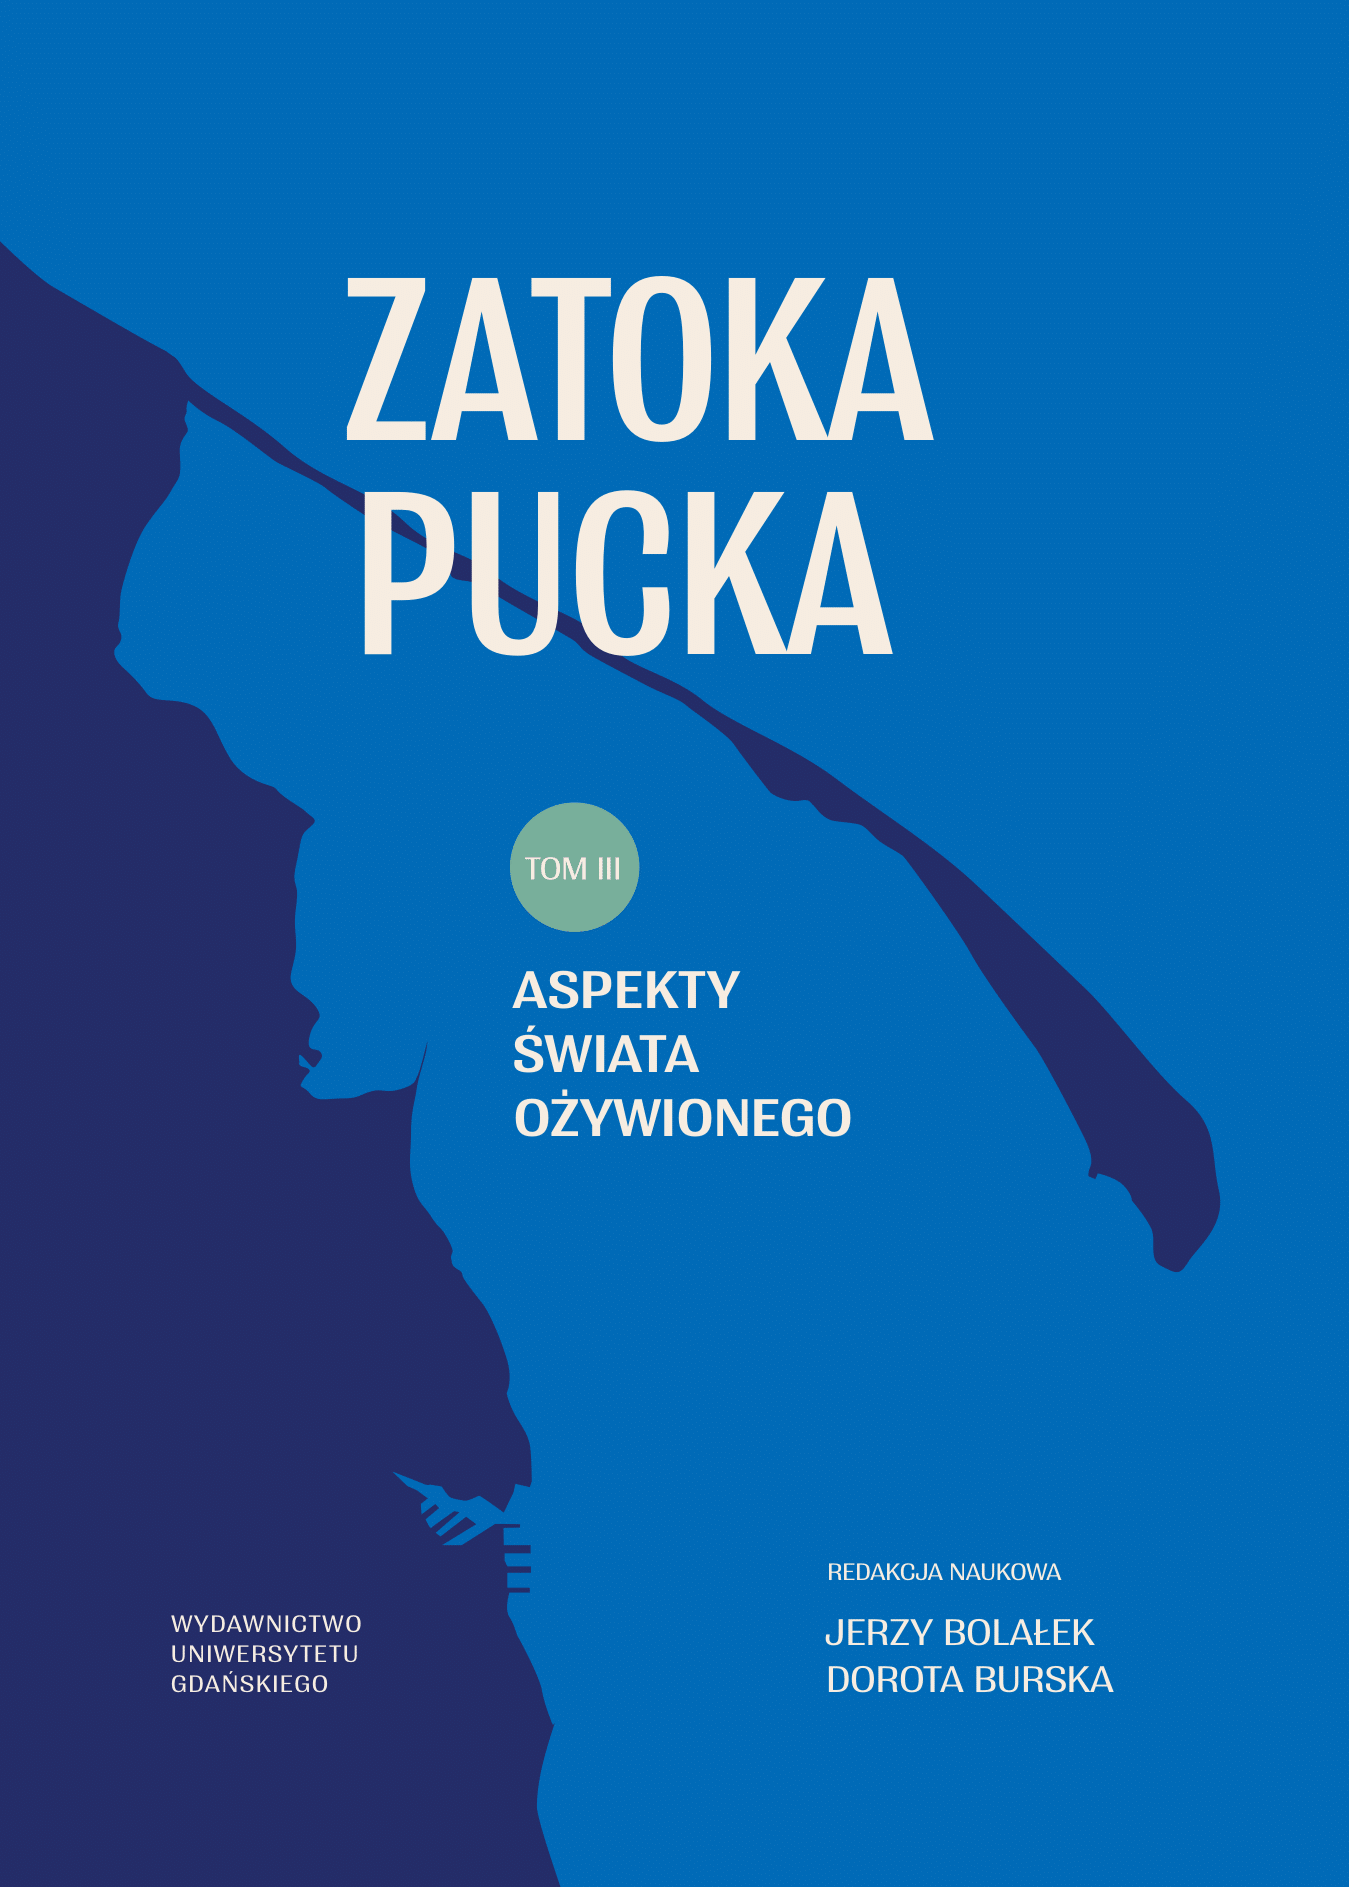 ZATOKA_PUCKA_22122021_T3-1